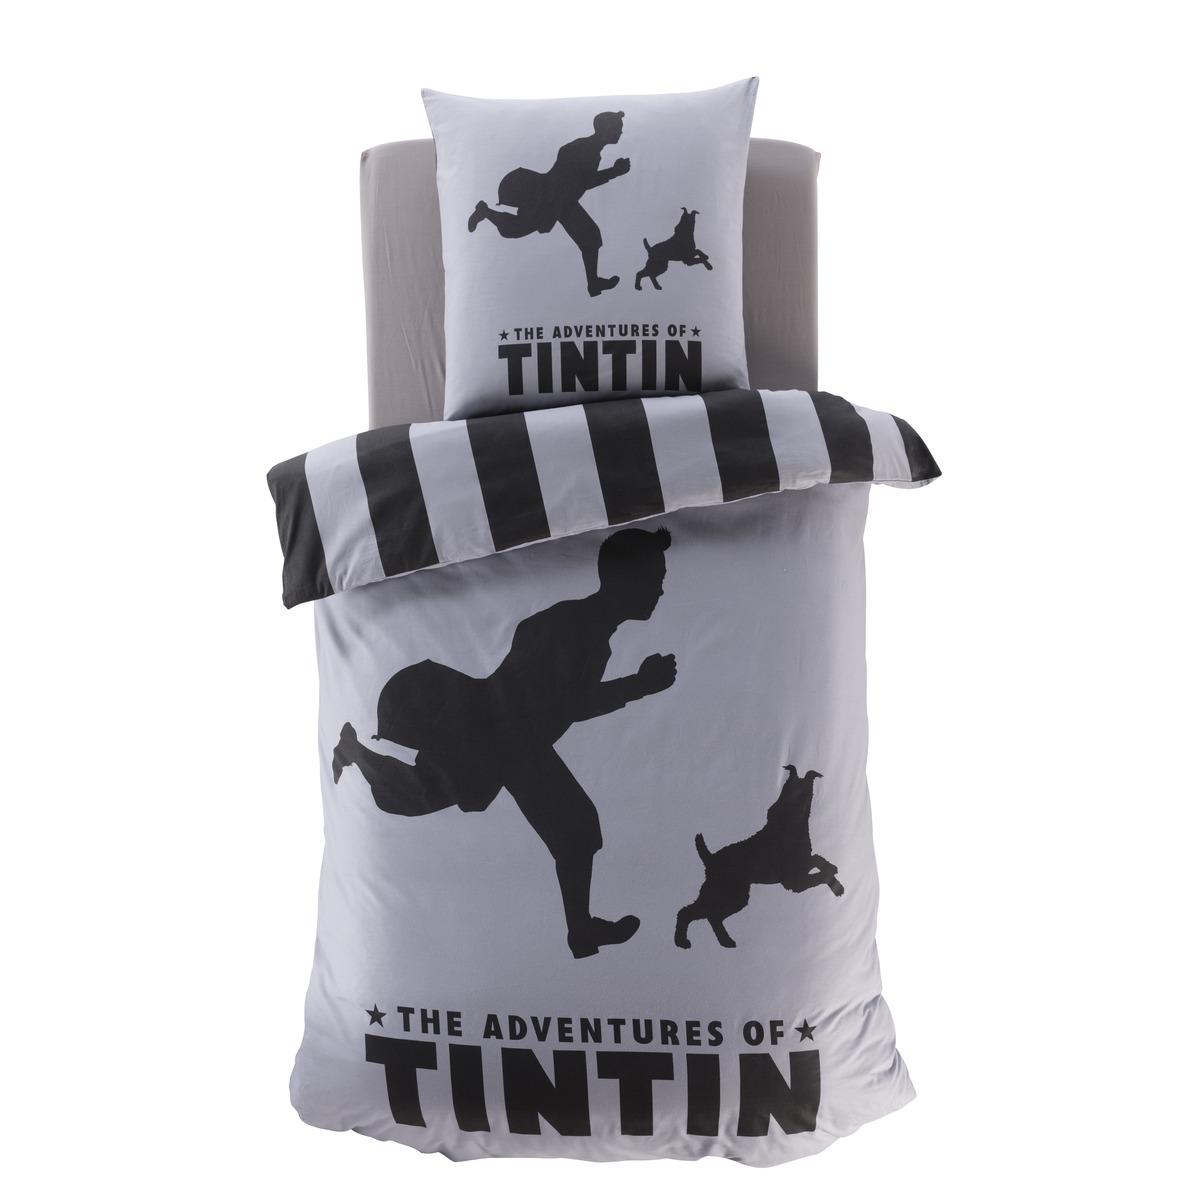 Parure de lit 1 personne à motif Tintin en coton - 140 x 200 cm - gris, noir